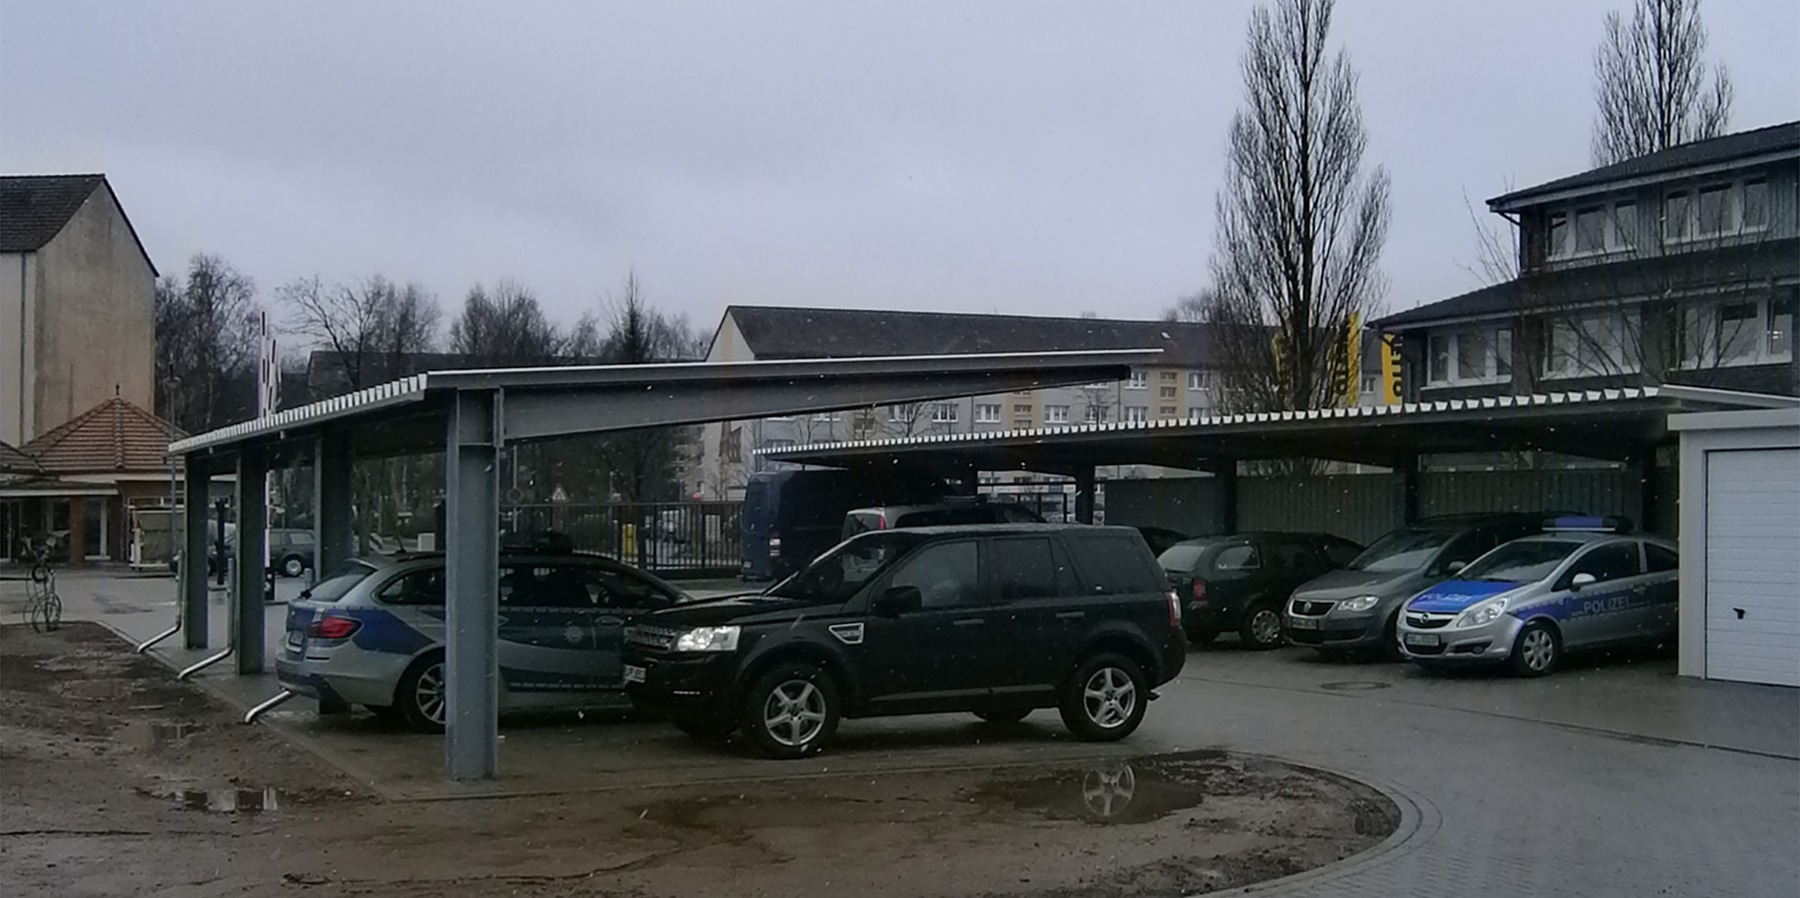 neu errichtete Carports zum Abstellen der Funkwagen im Hofbereich © 2013 Betrieb für Bau und Liegenschaften Mecklenburg-Vorpommern